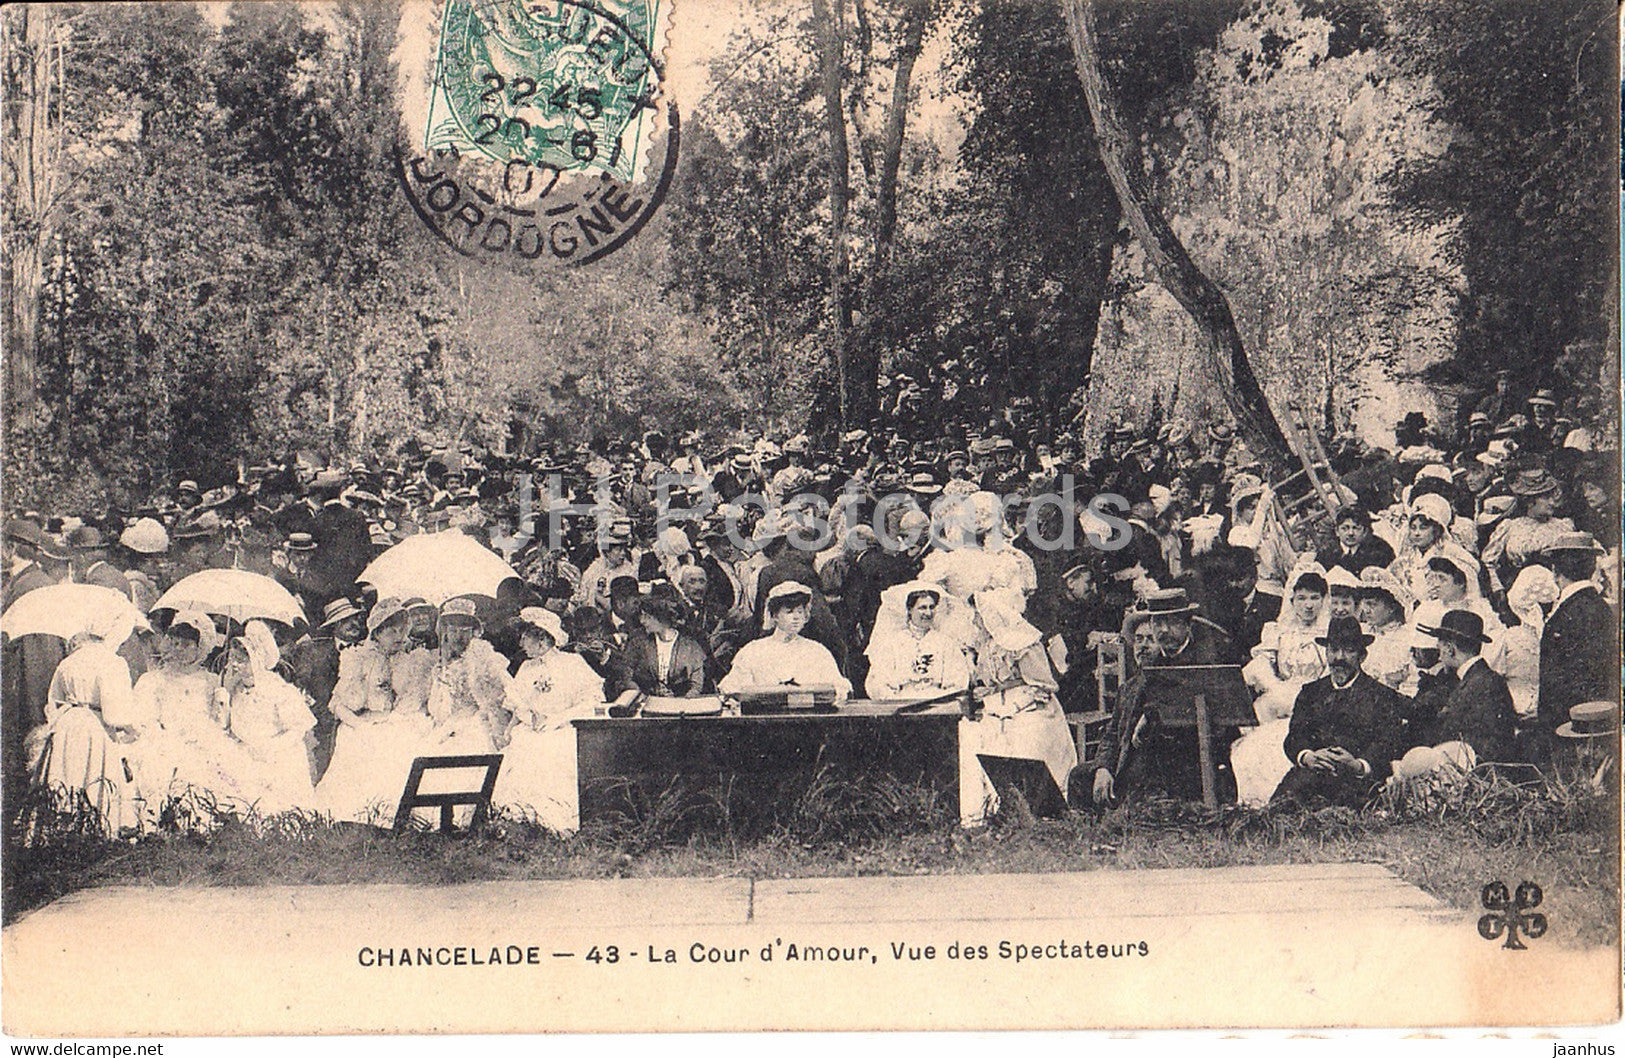 Chancelade - La Cour d'Amour - Vue des Spectateurs - 43 - old postcard - 1907 - France - used - JH Postcards